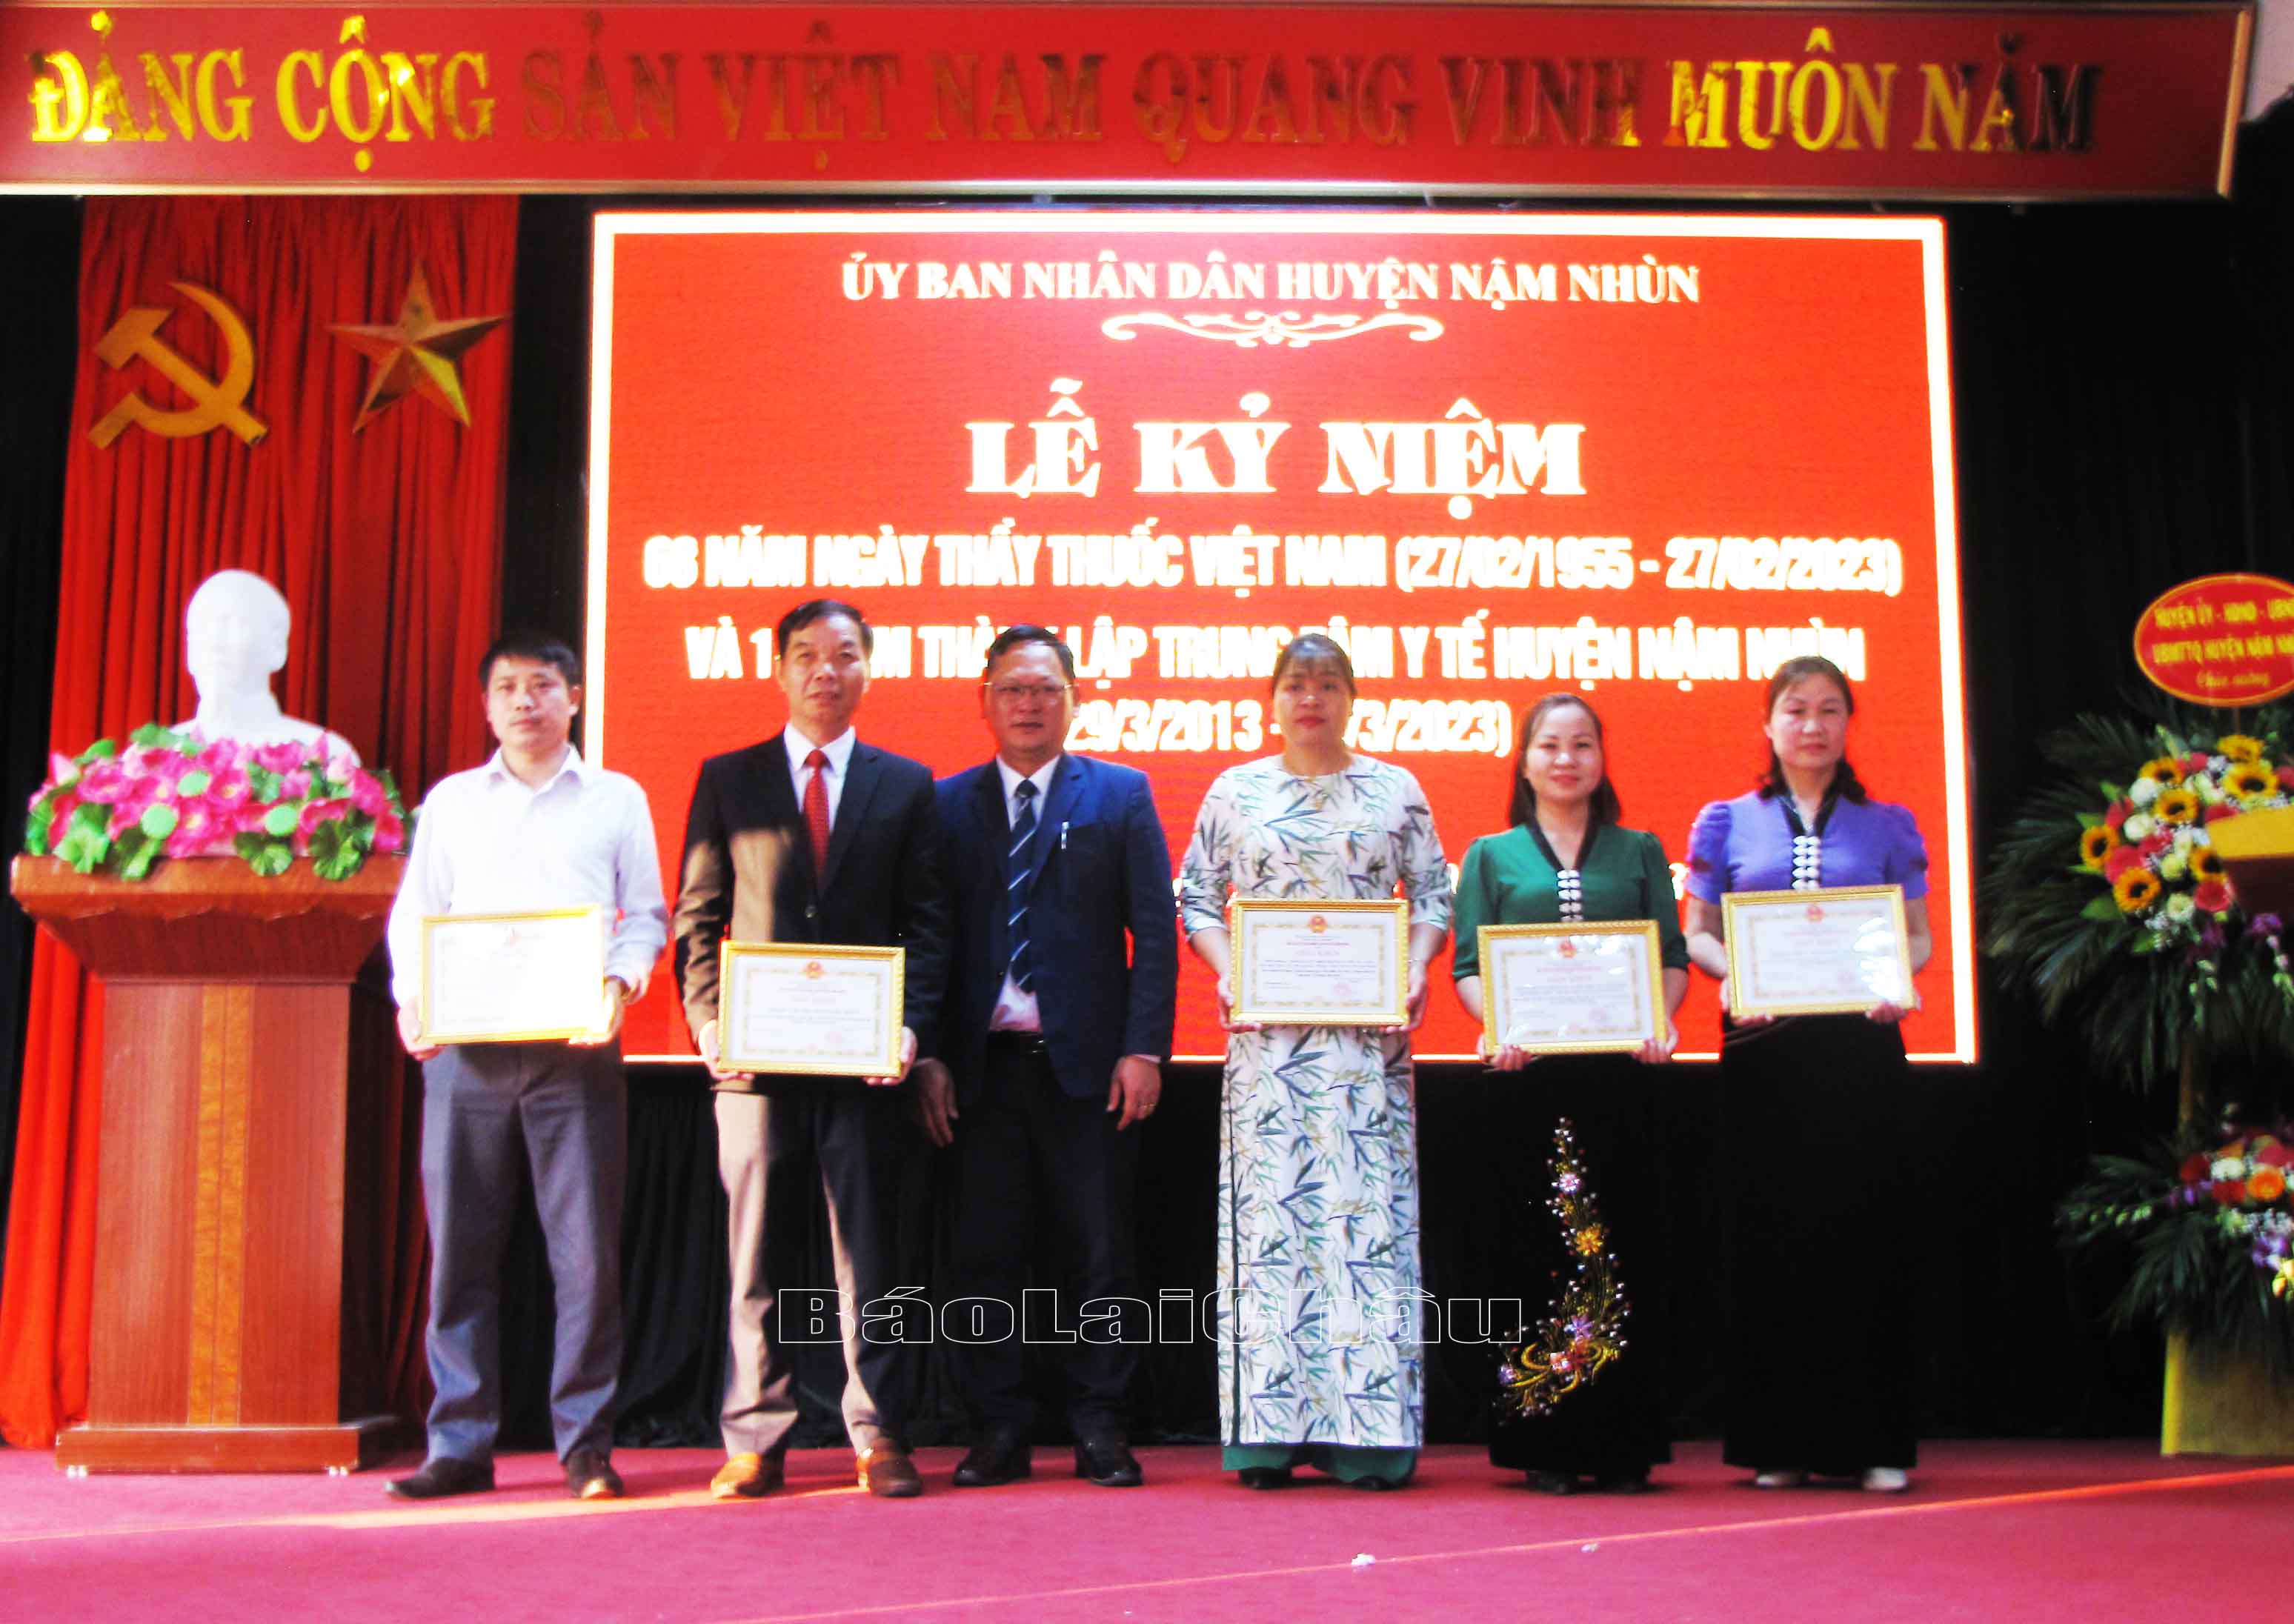 Lãnh đạo huyện Nậm Nhùn tặng giấy khen cho các tập thể có thành xuất sắc nhân dịp kỷ niệm 68 năm Ngày thầy thuốc Việt Nam và 10 năm thành lập Trung tâm Y tế huyện Nậm Nhùn.